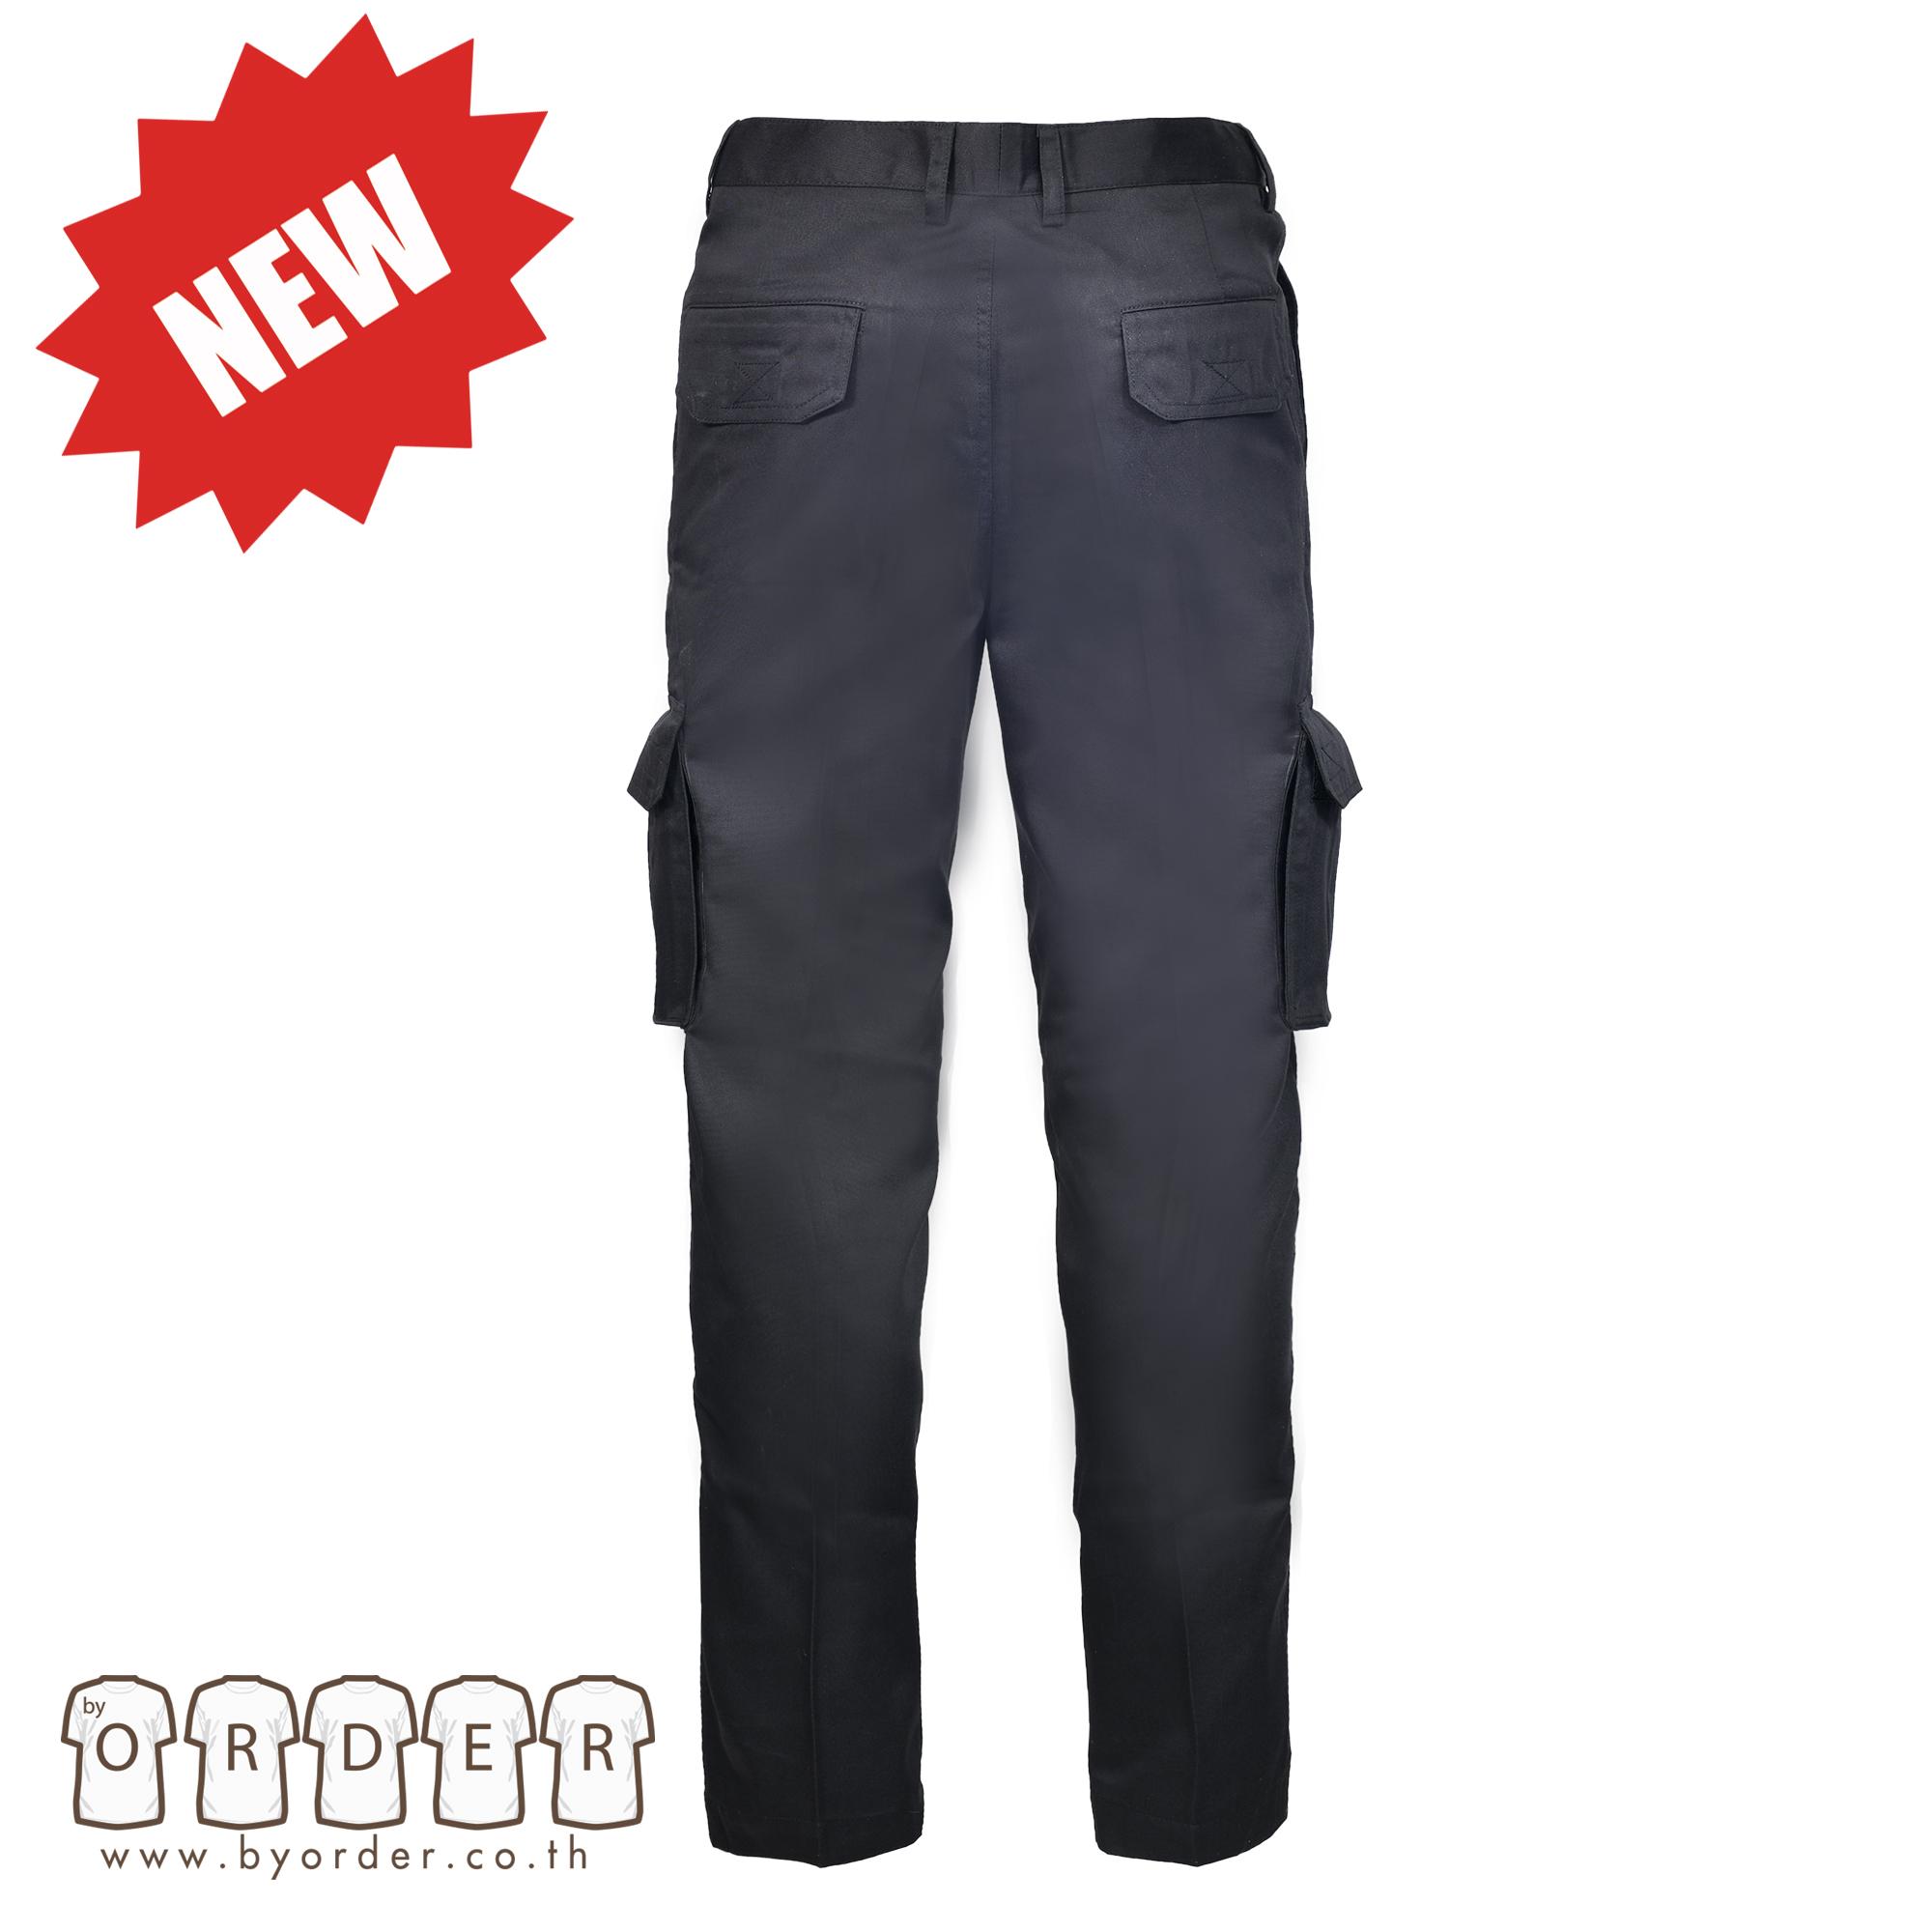 กางเกงคาร์โก้รุ่น  V02 กางเกงขายาวอย่างดี สีดำ กางเกงช่าง กางเกงทำงาน   สินค้าขายคุณภาพแบรนด์เนม ใช้ทน คุ้มค่าแน่นอน สี ดำ ขนาด เอว 40 สี ดำขนาด เอว 40